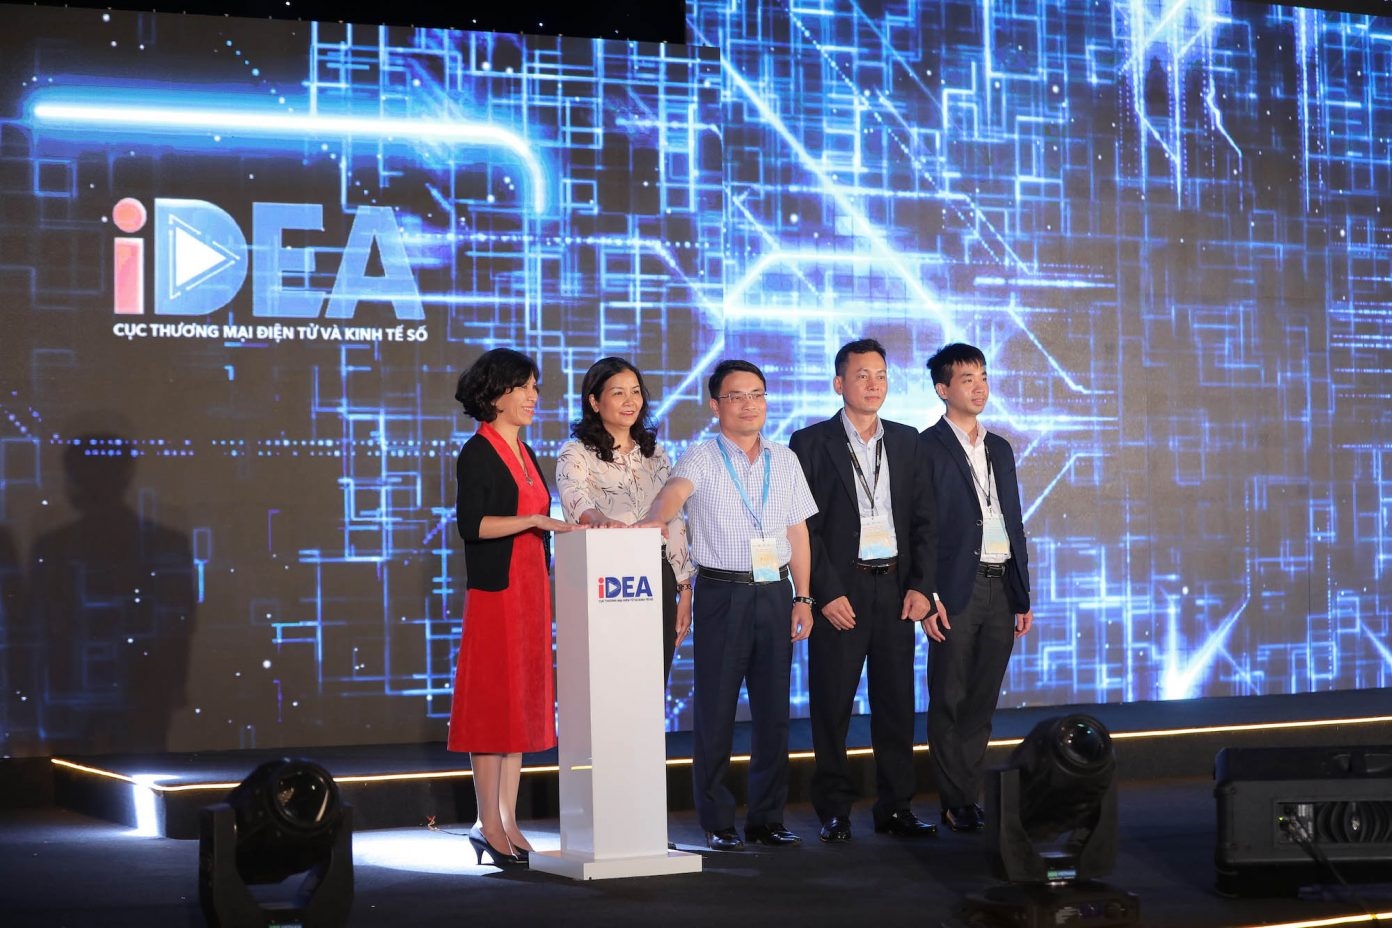 IDEA - Amazon miễn phí hỗ trợ doanh nghiệp Việt tham gia thương mại điện tử